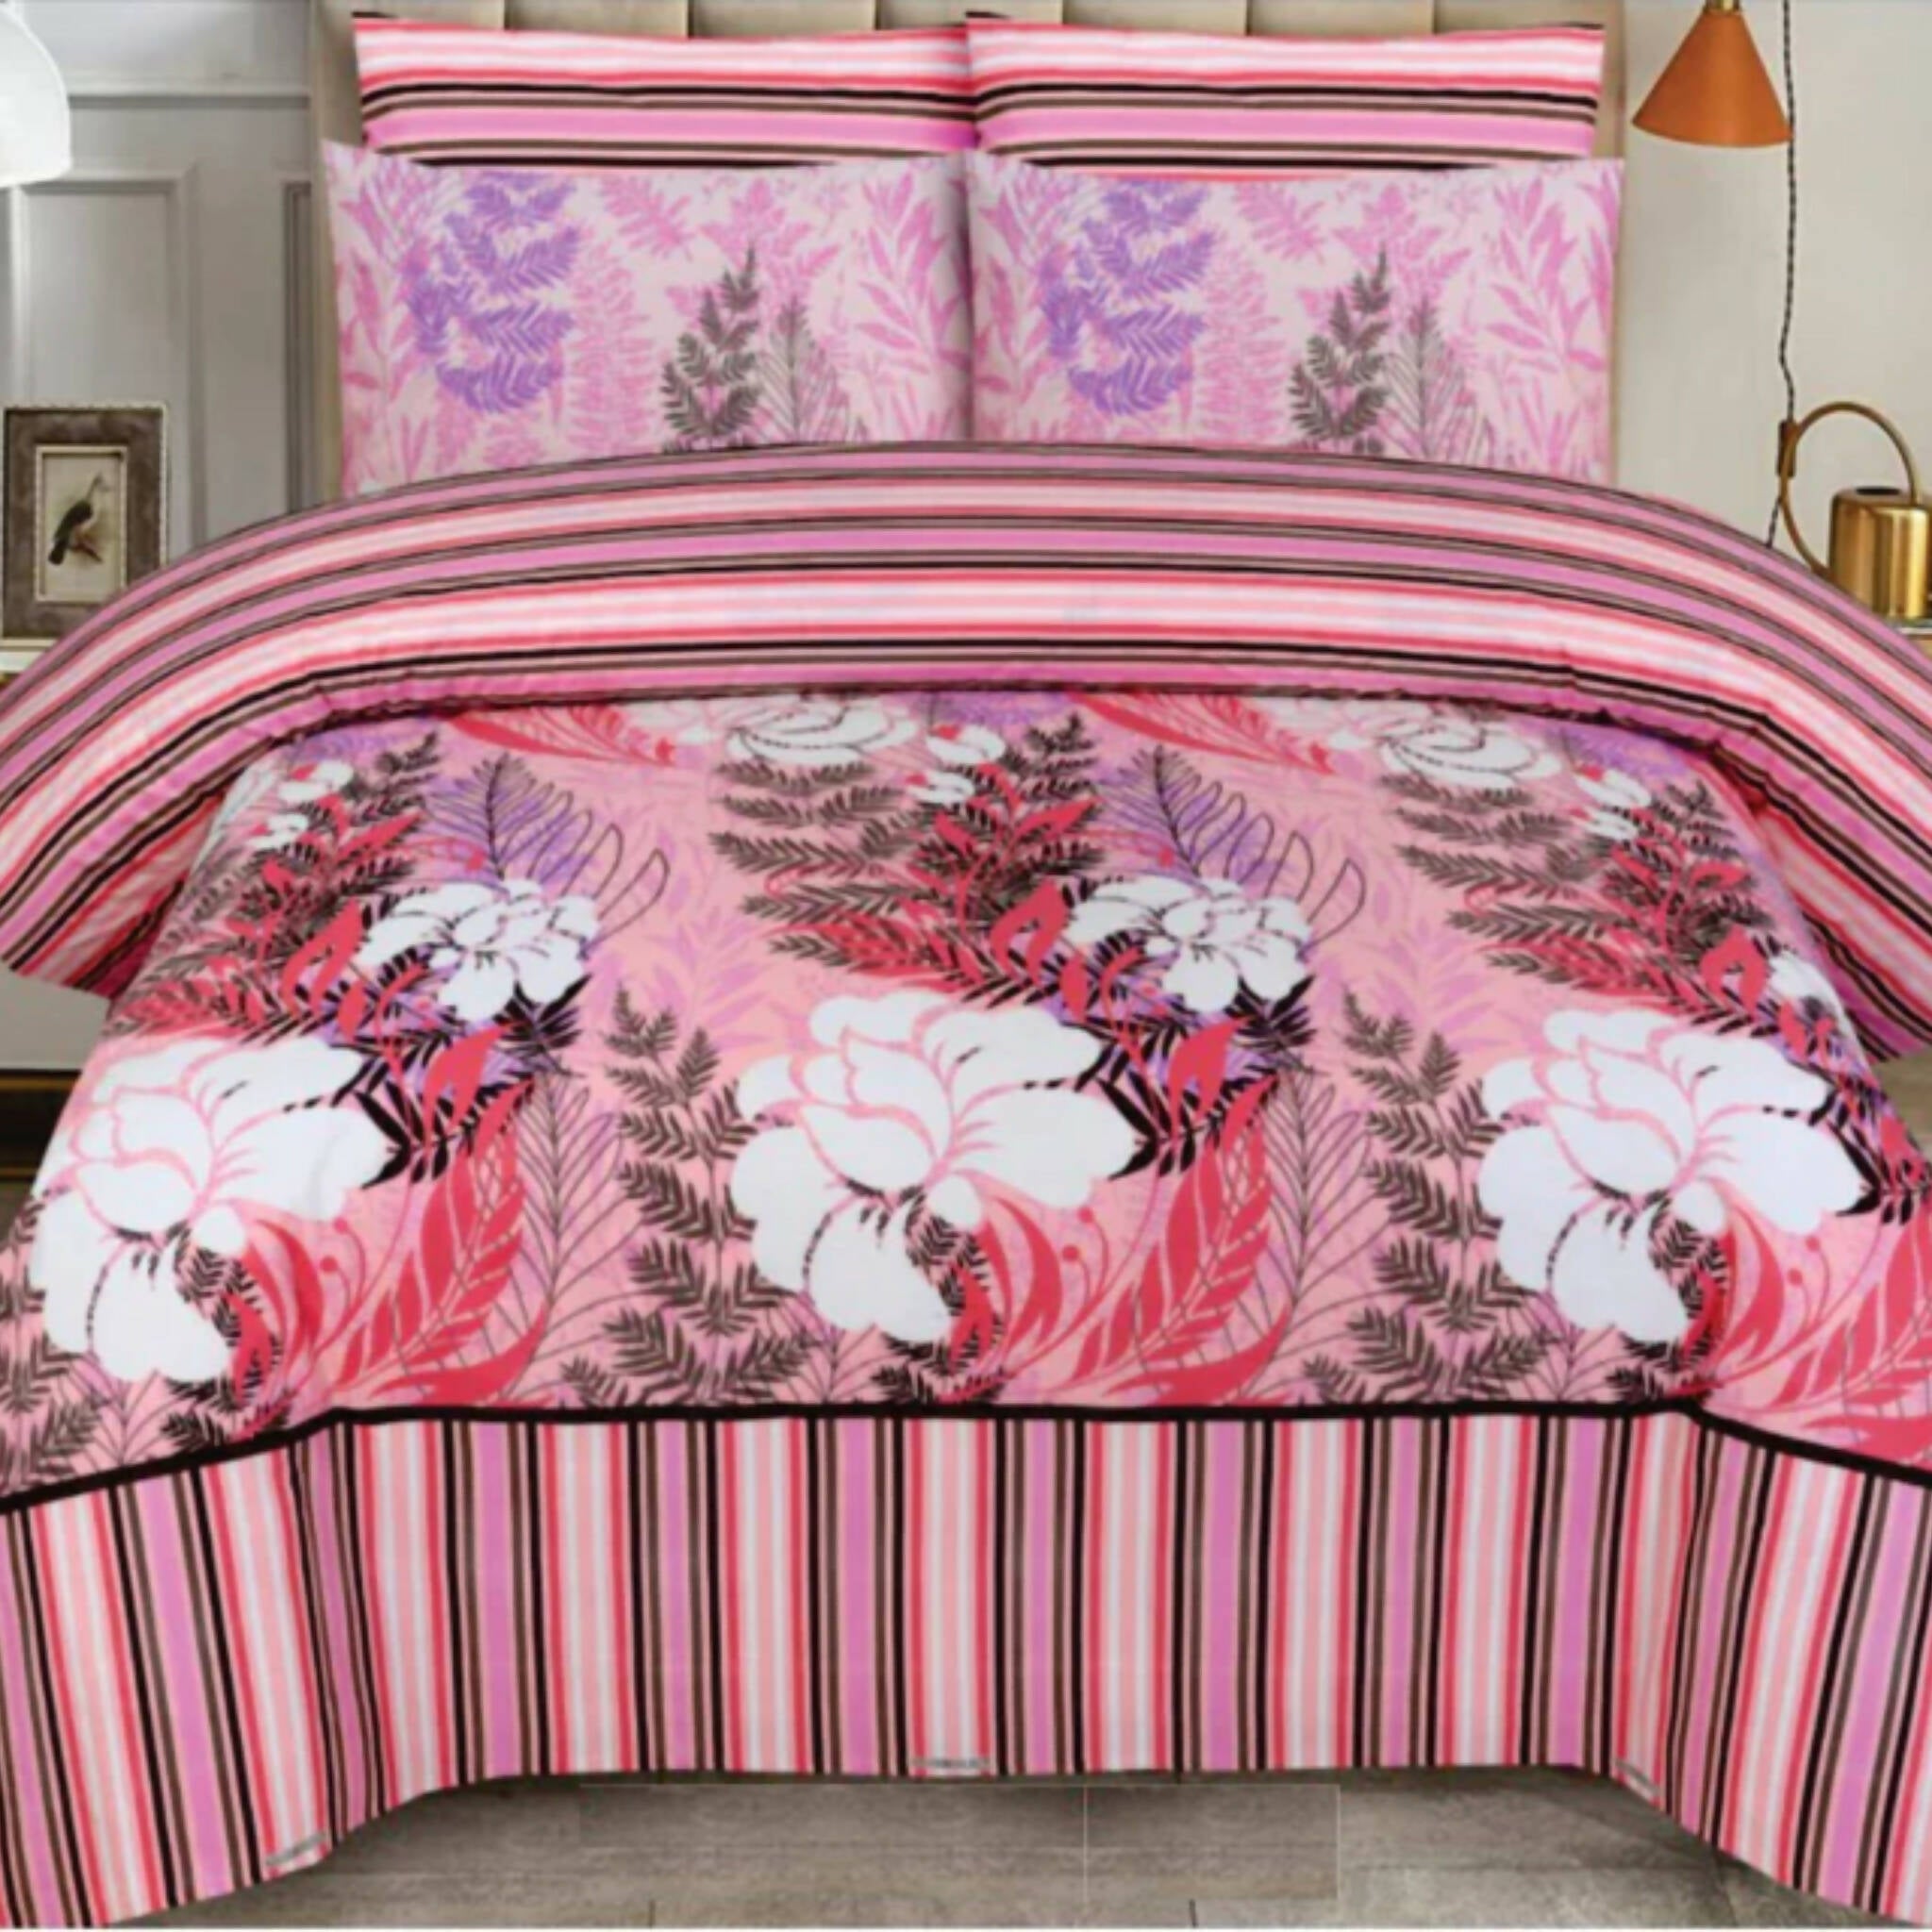 Quilt & Cover, Elegant Pink & Stripe Floral